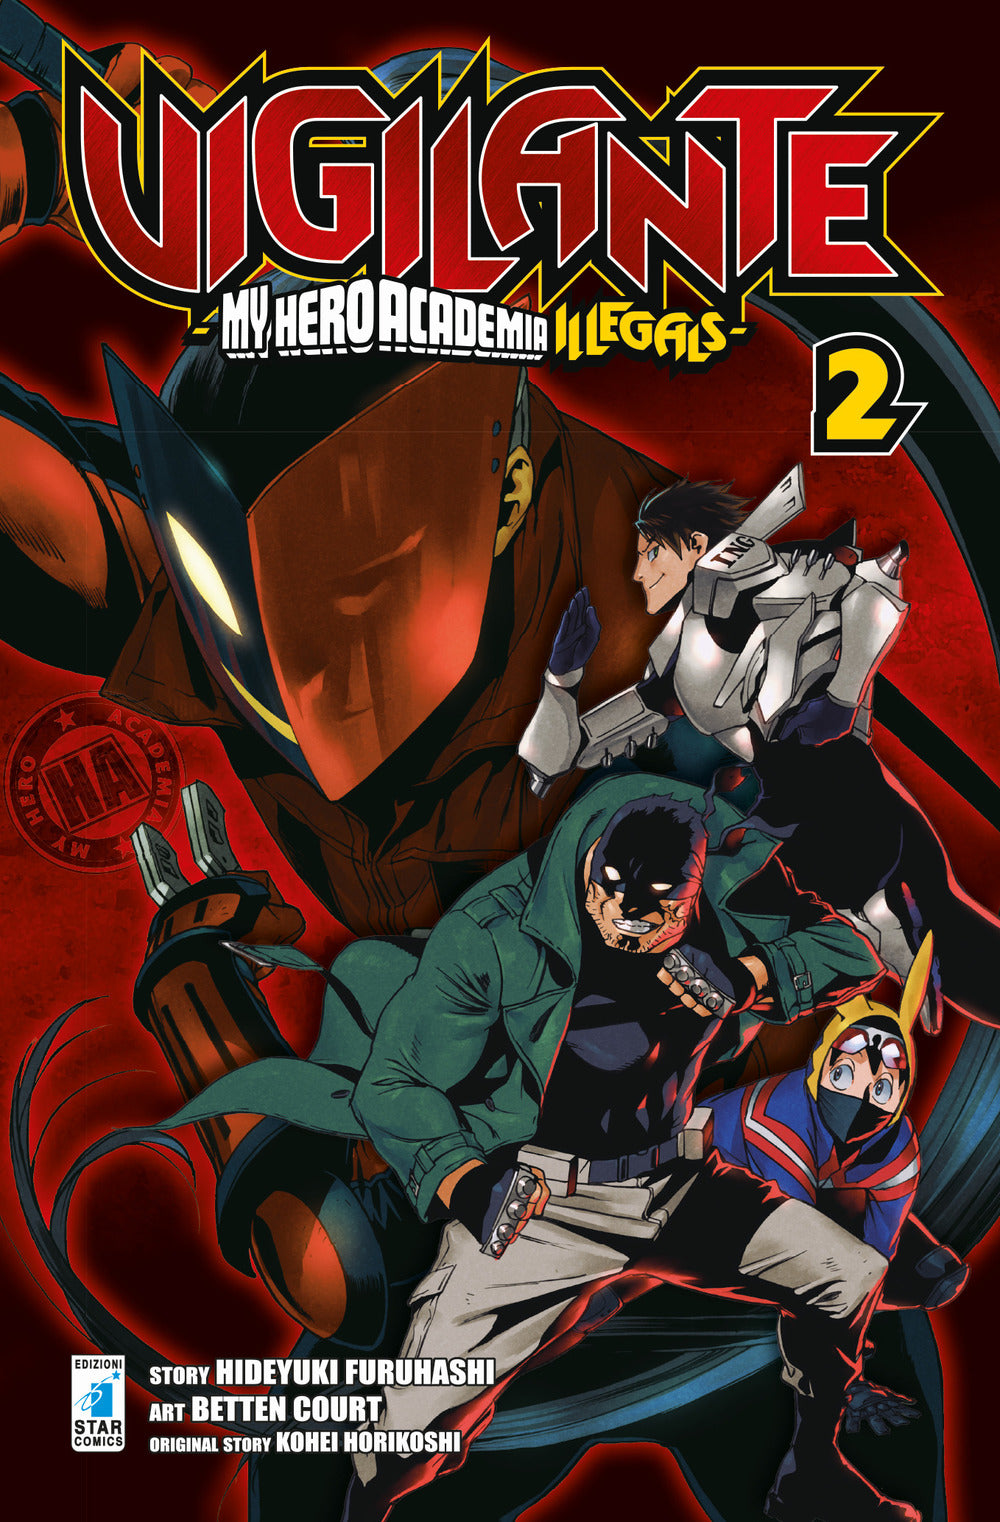 Vigilante. My Hero Academia illegals. Vol. 2